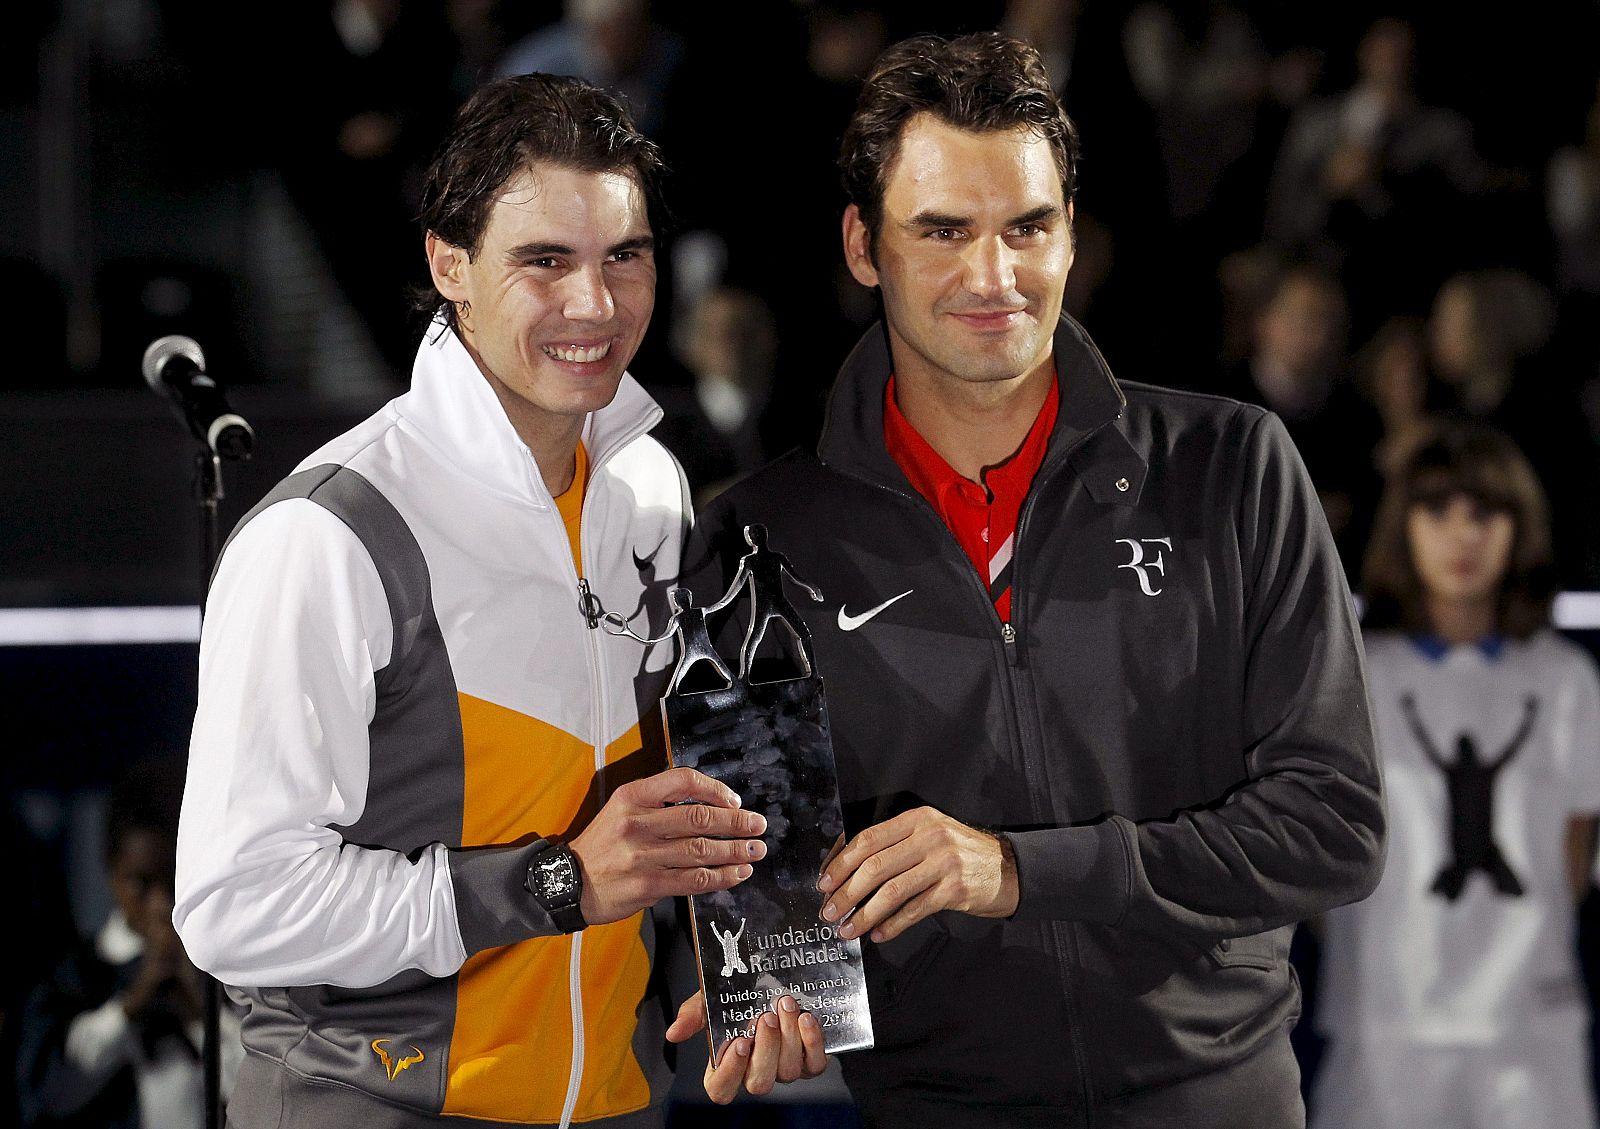 Imagen del partido benéfico disputado en 2010 por Rafa Nadal y Roger Federer